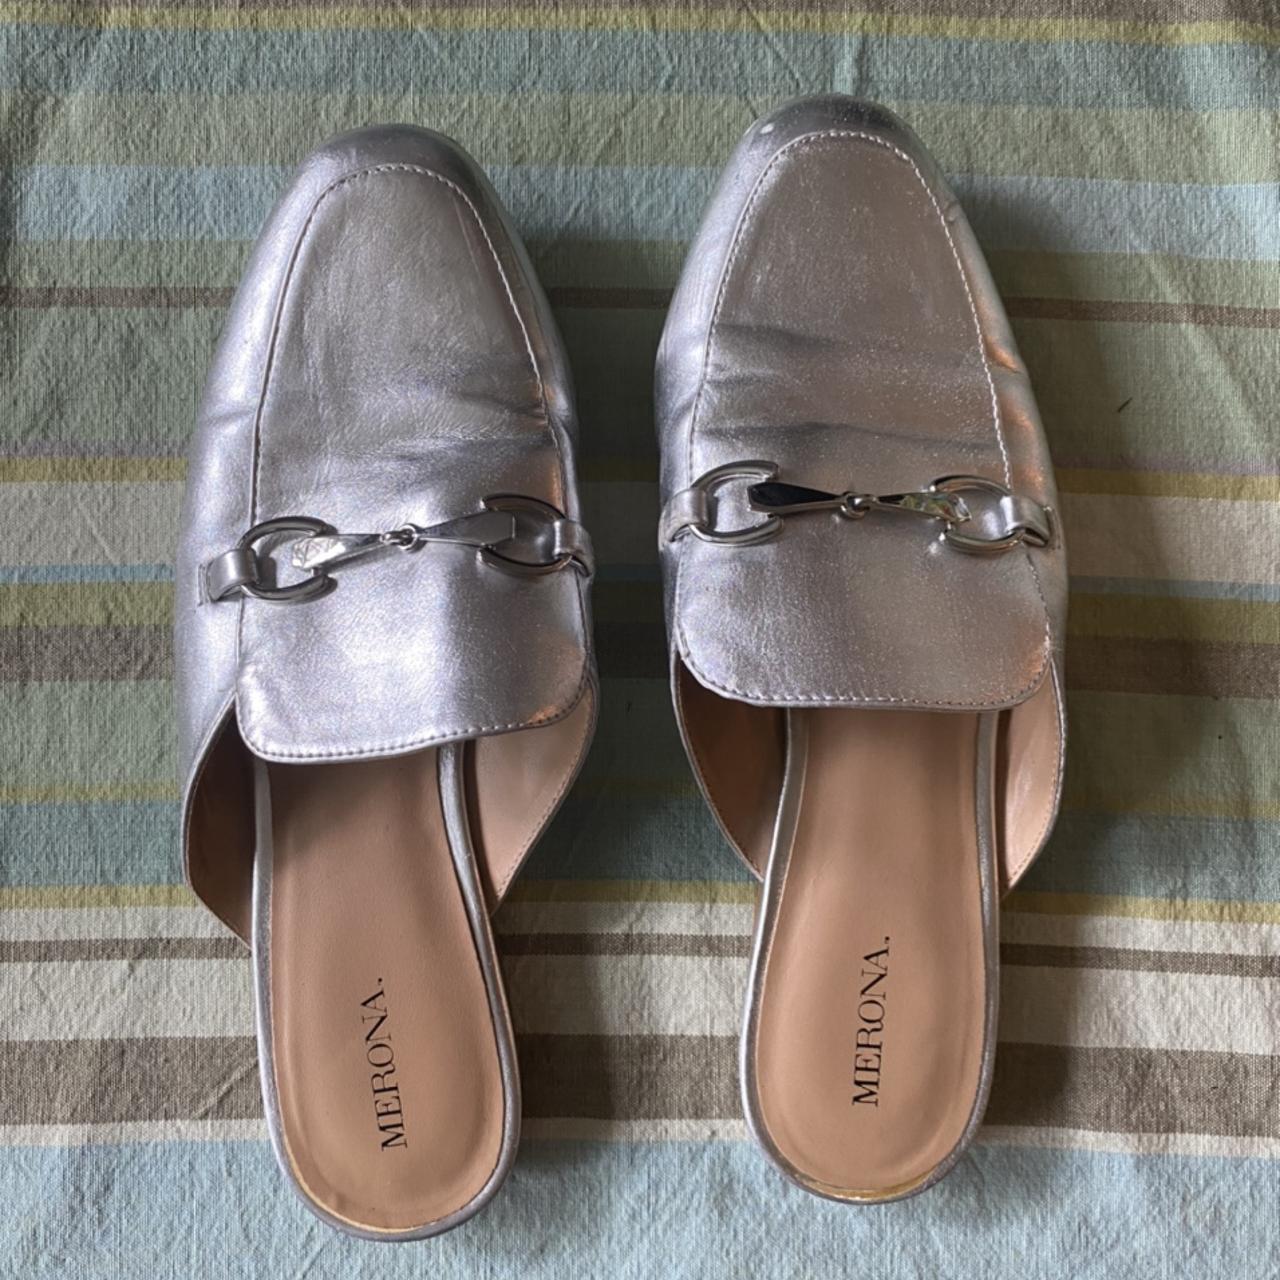 Merona silver backless loafers Women’s Size 9 Good... - Depop